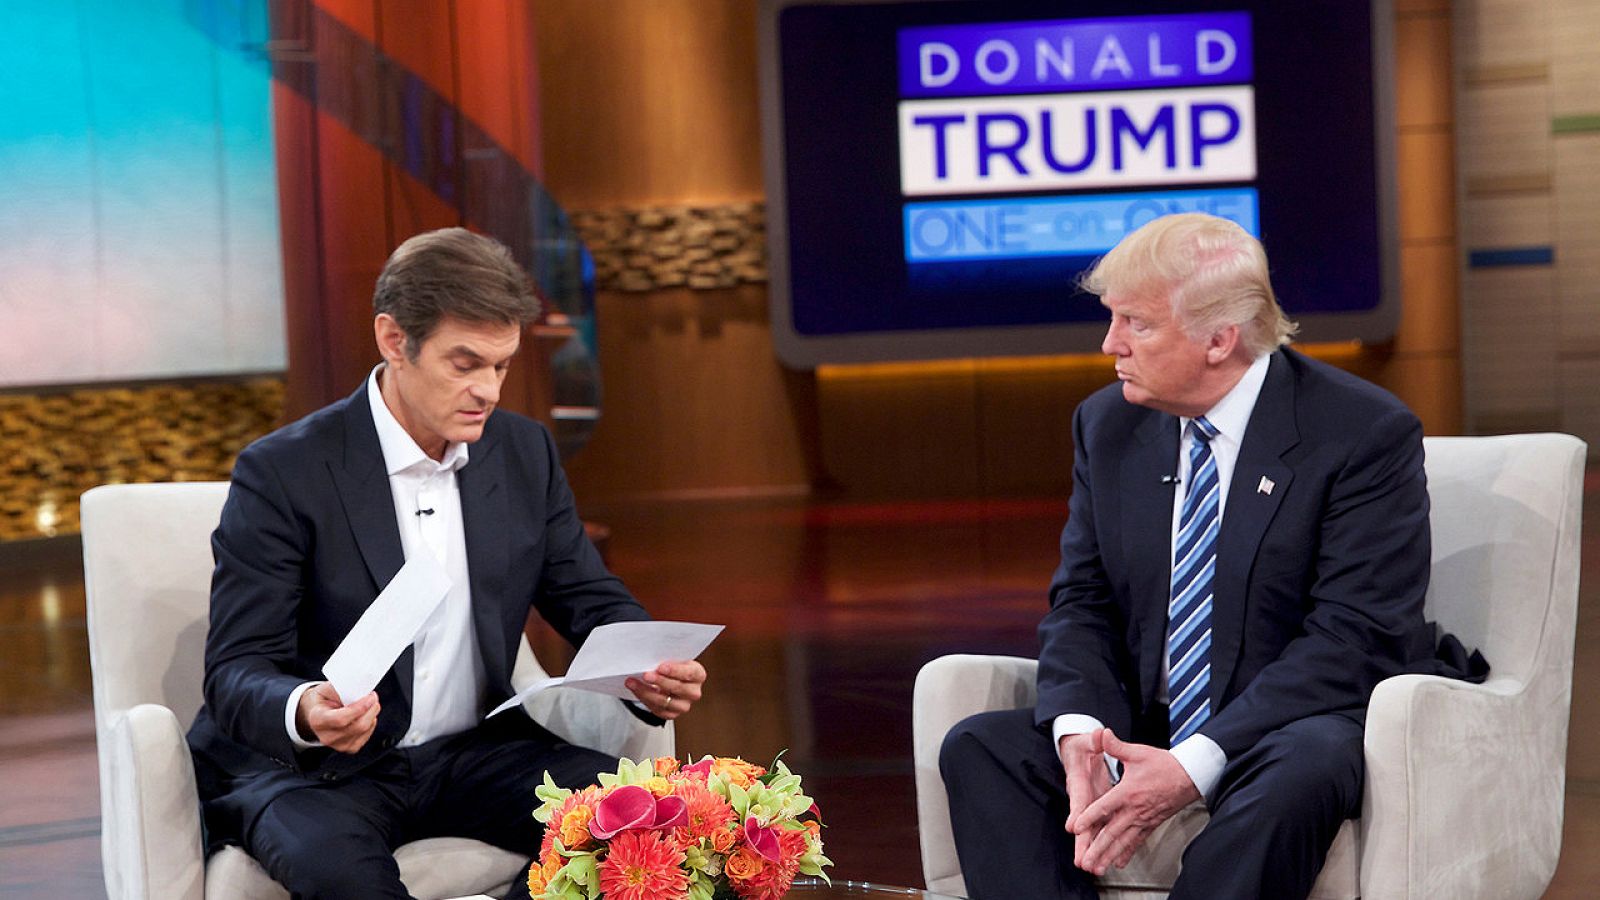 Donald Trump entrega informes médicos al doctor Mehmet Oz en el programa televisivo "El show del doctor Oz", el 14 de septiembre de 2016. Sony Pictures Television/via REUTERS